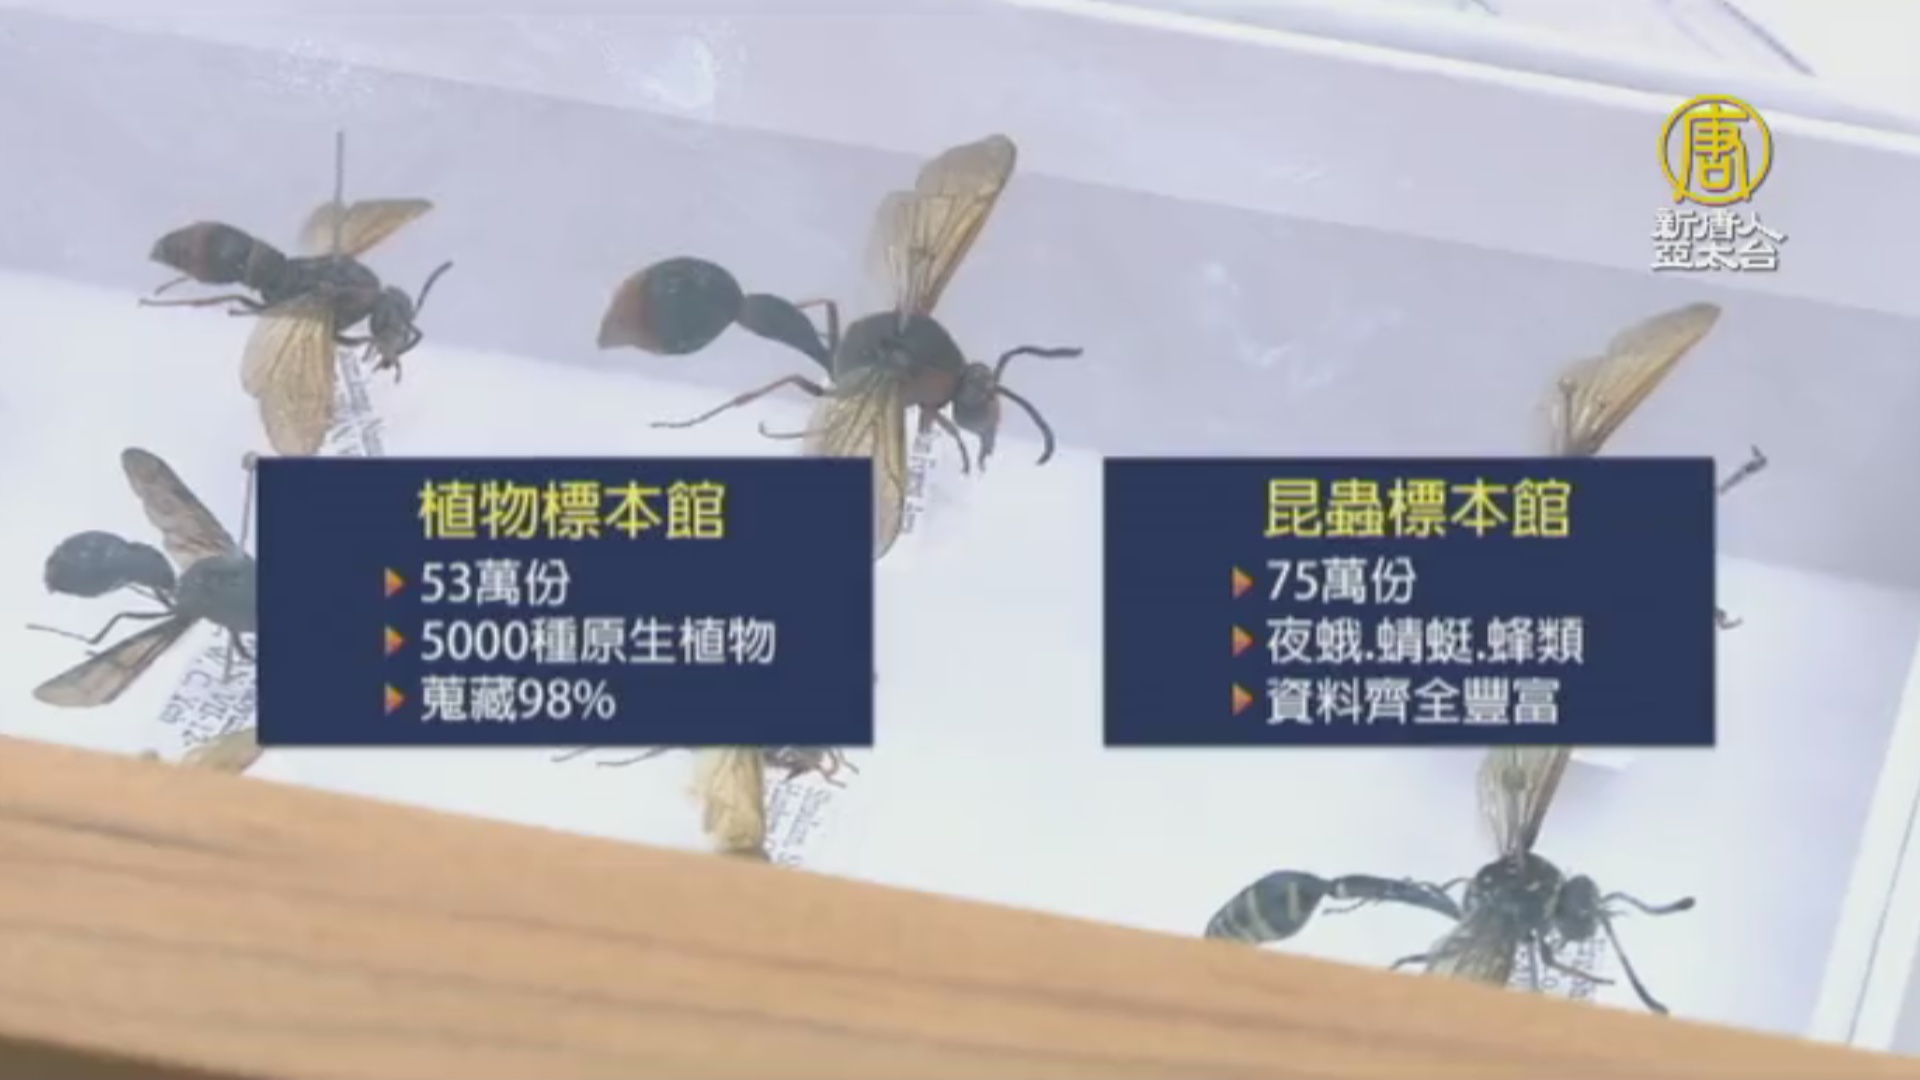 林試所植物標本館世界排名91 首進入全球百大 新唐人亞太電視台